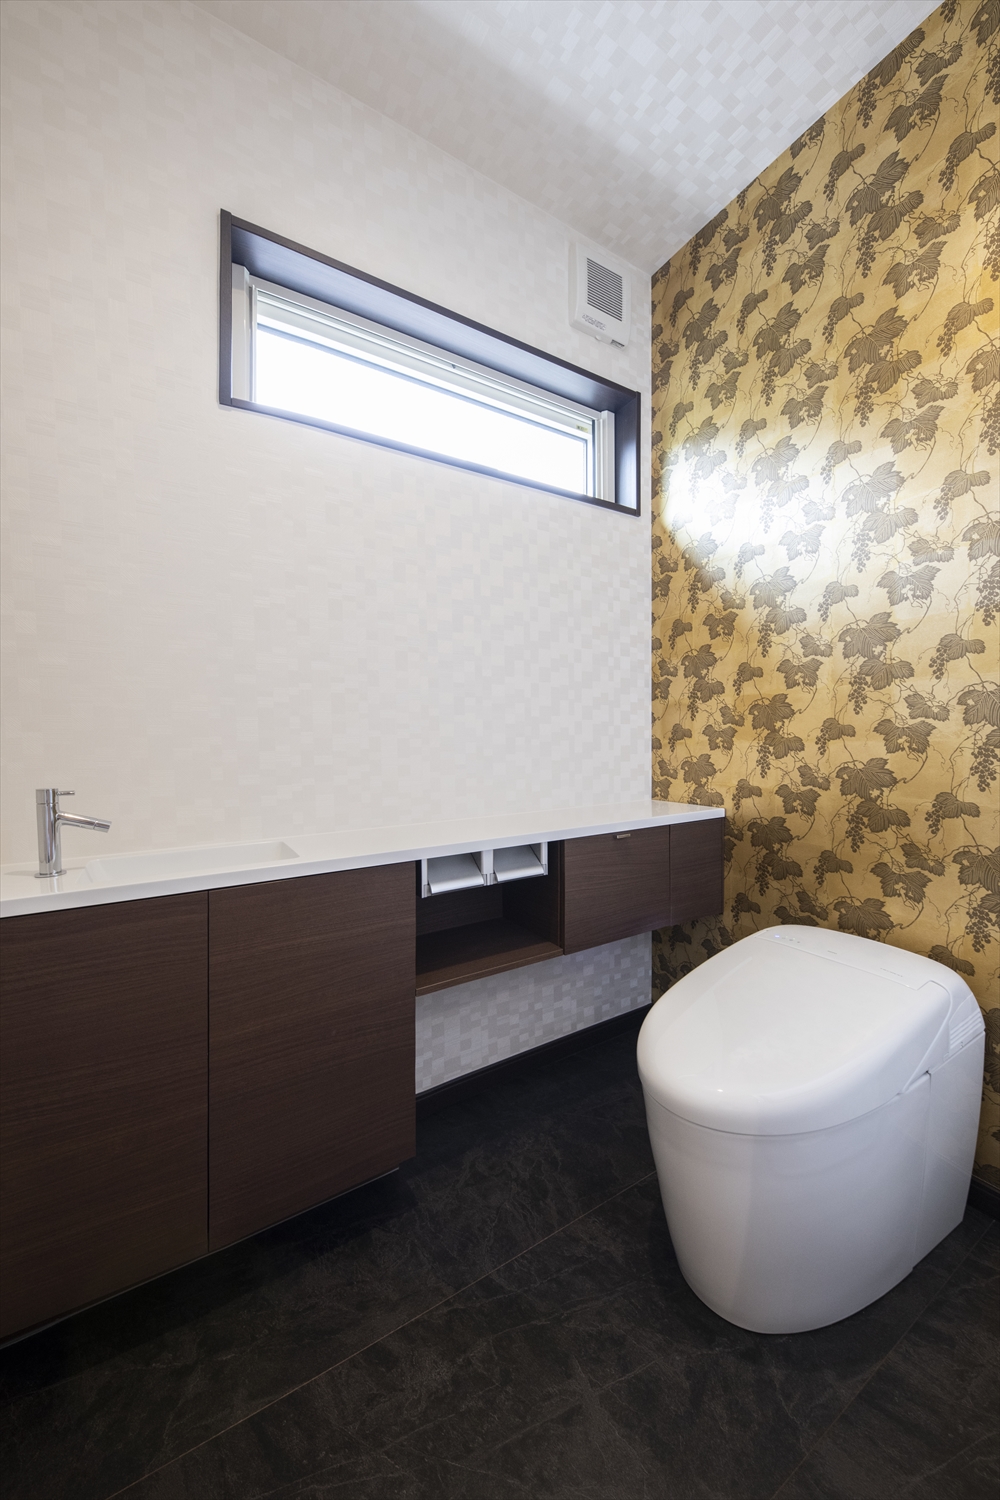 １階トイレ／コンパクトなタンクレストイレを採用して華やかなアクセントクロスで彩り高級感のある空間に